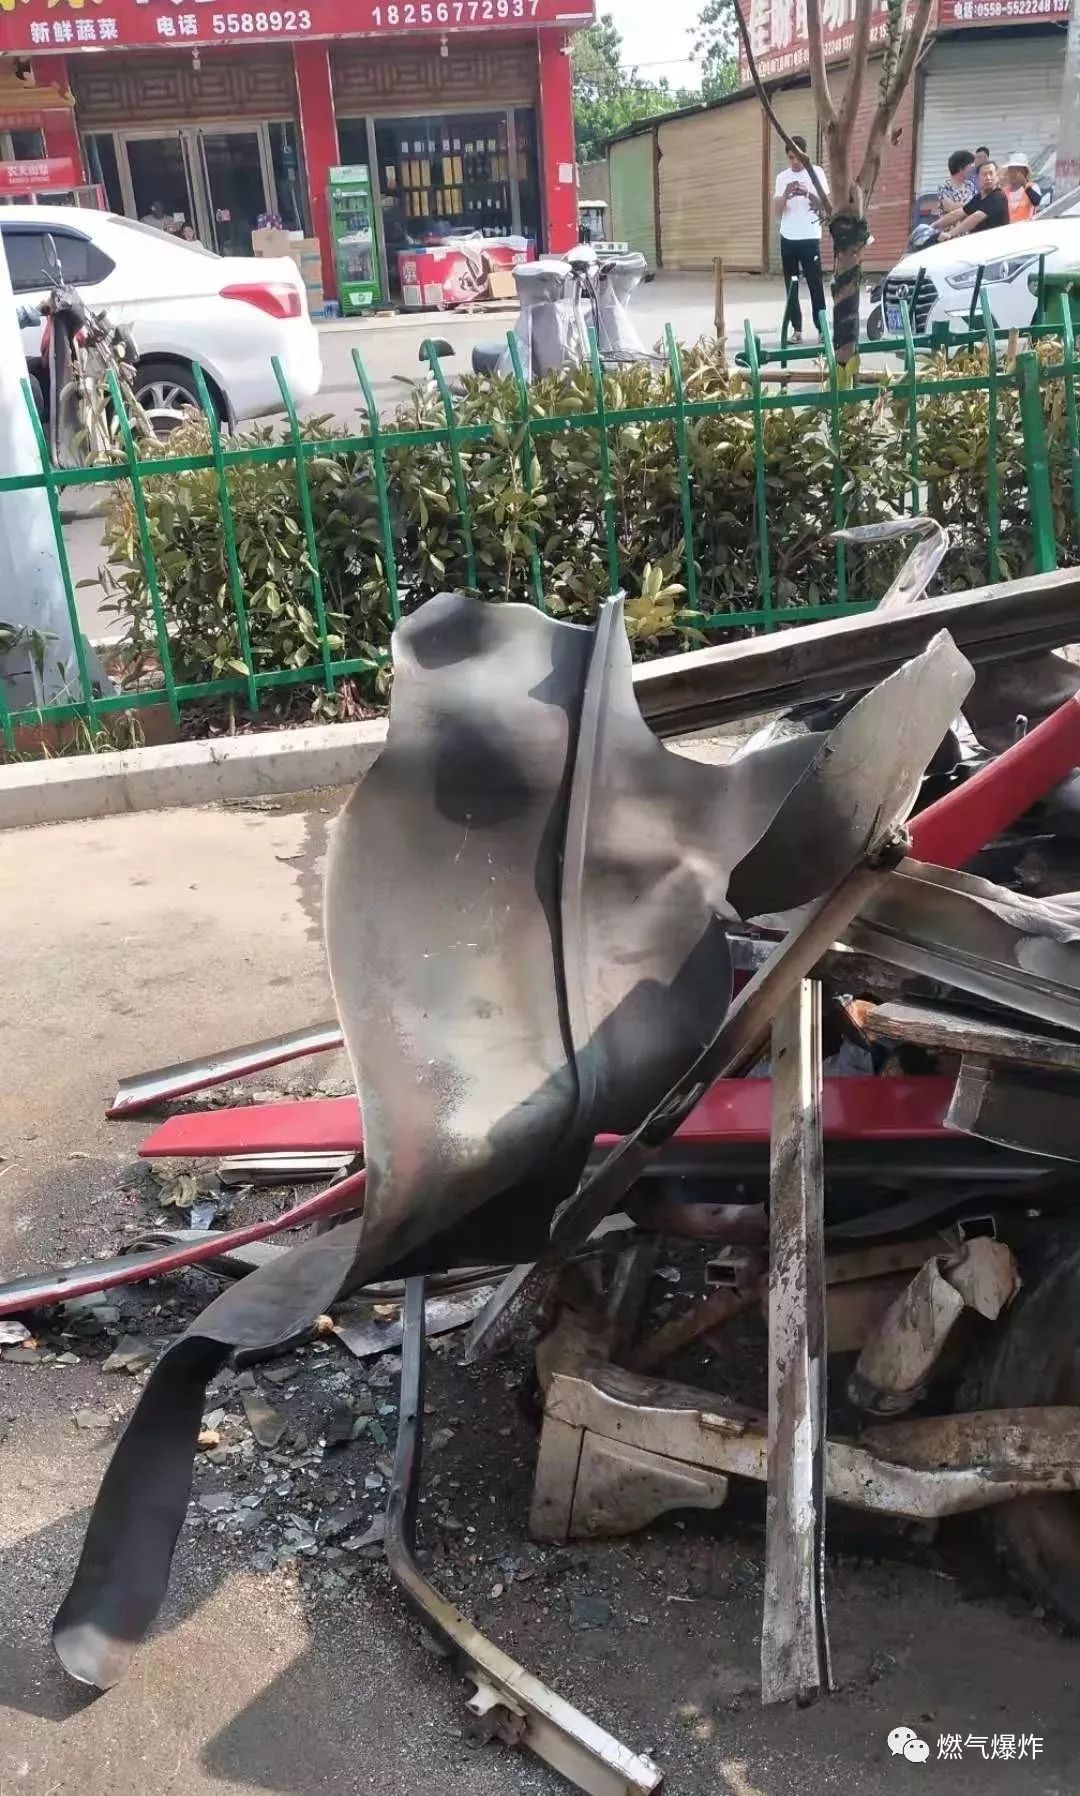 浙江温岭槽罐车爆炸事故致19人死亡 爆炸车辆为液化石油气槽罐车_奇象网